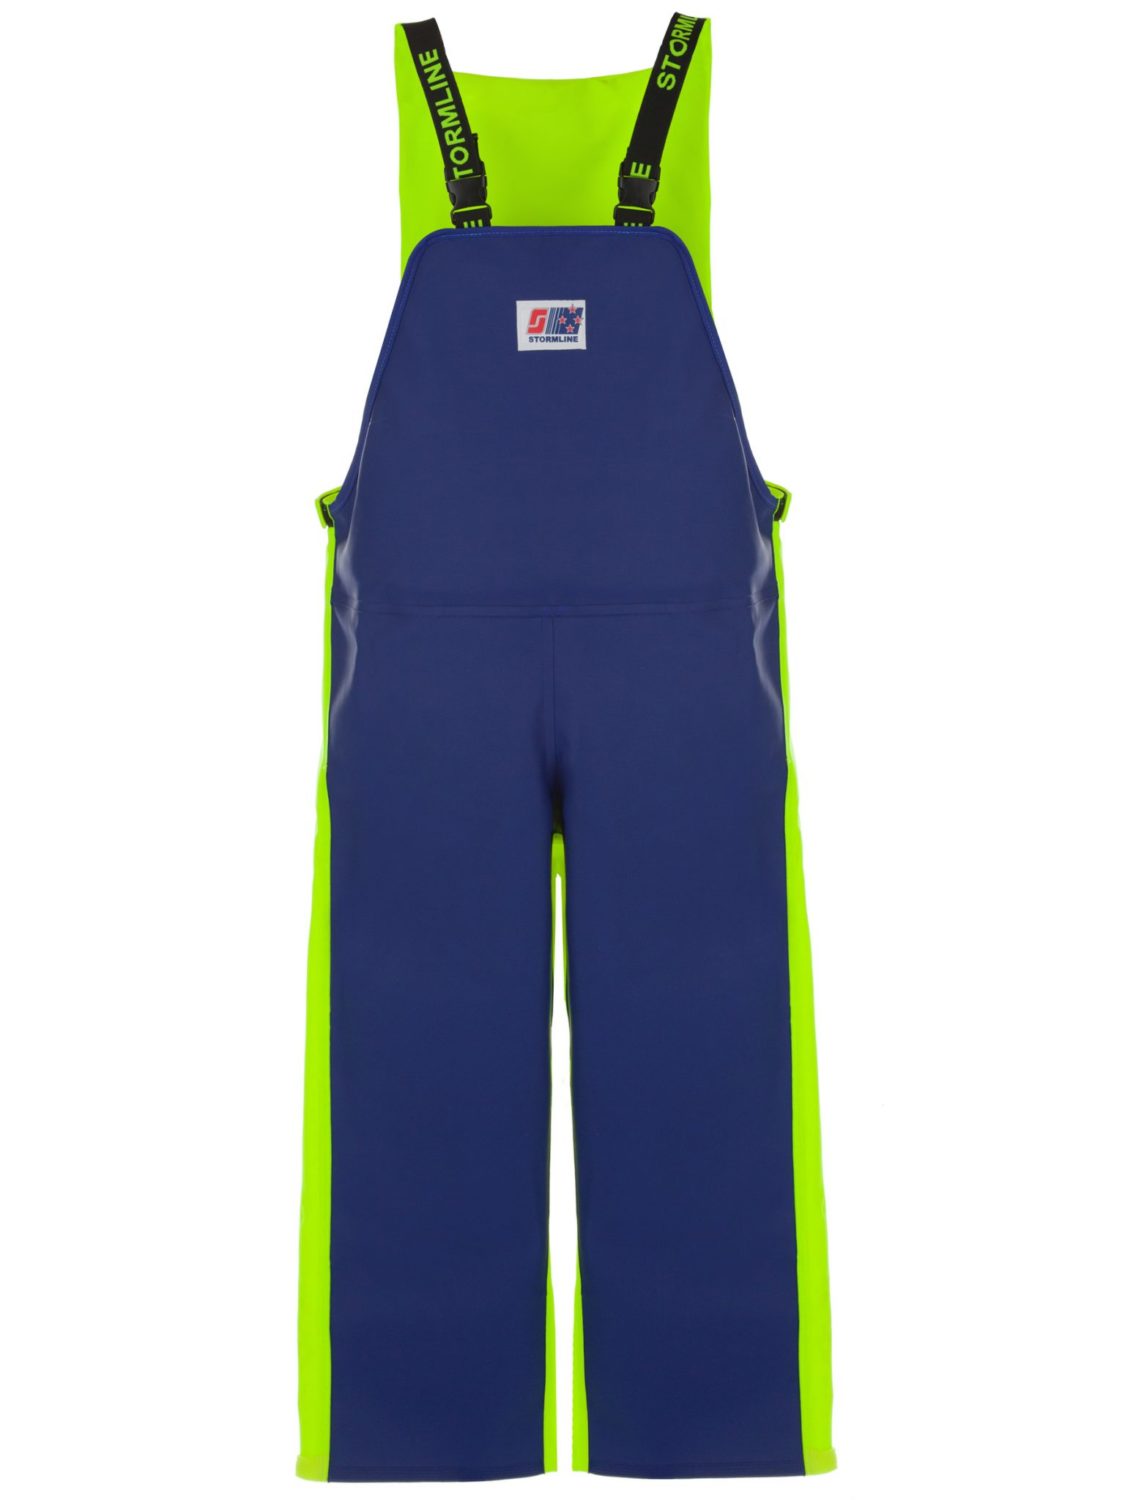 Workwear Bib Rain Pants for Men Women Heavy Duty Trousers Waterproof Work Pants  Fishing Overalls 